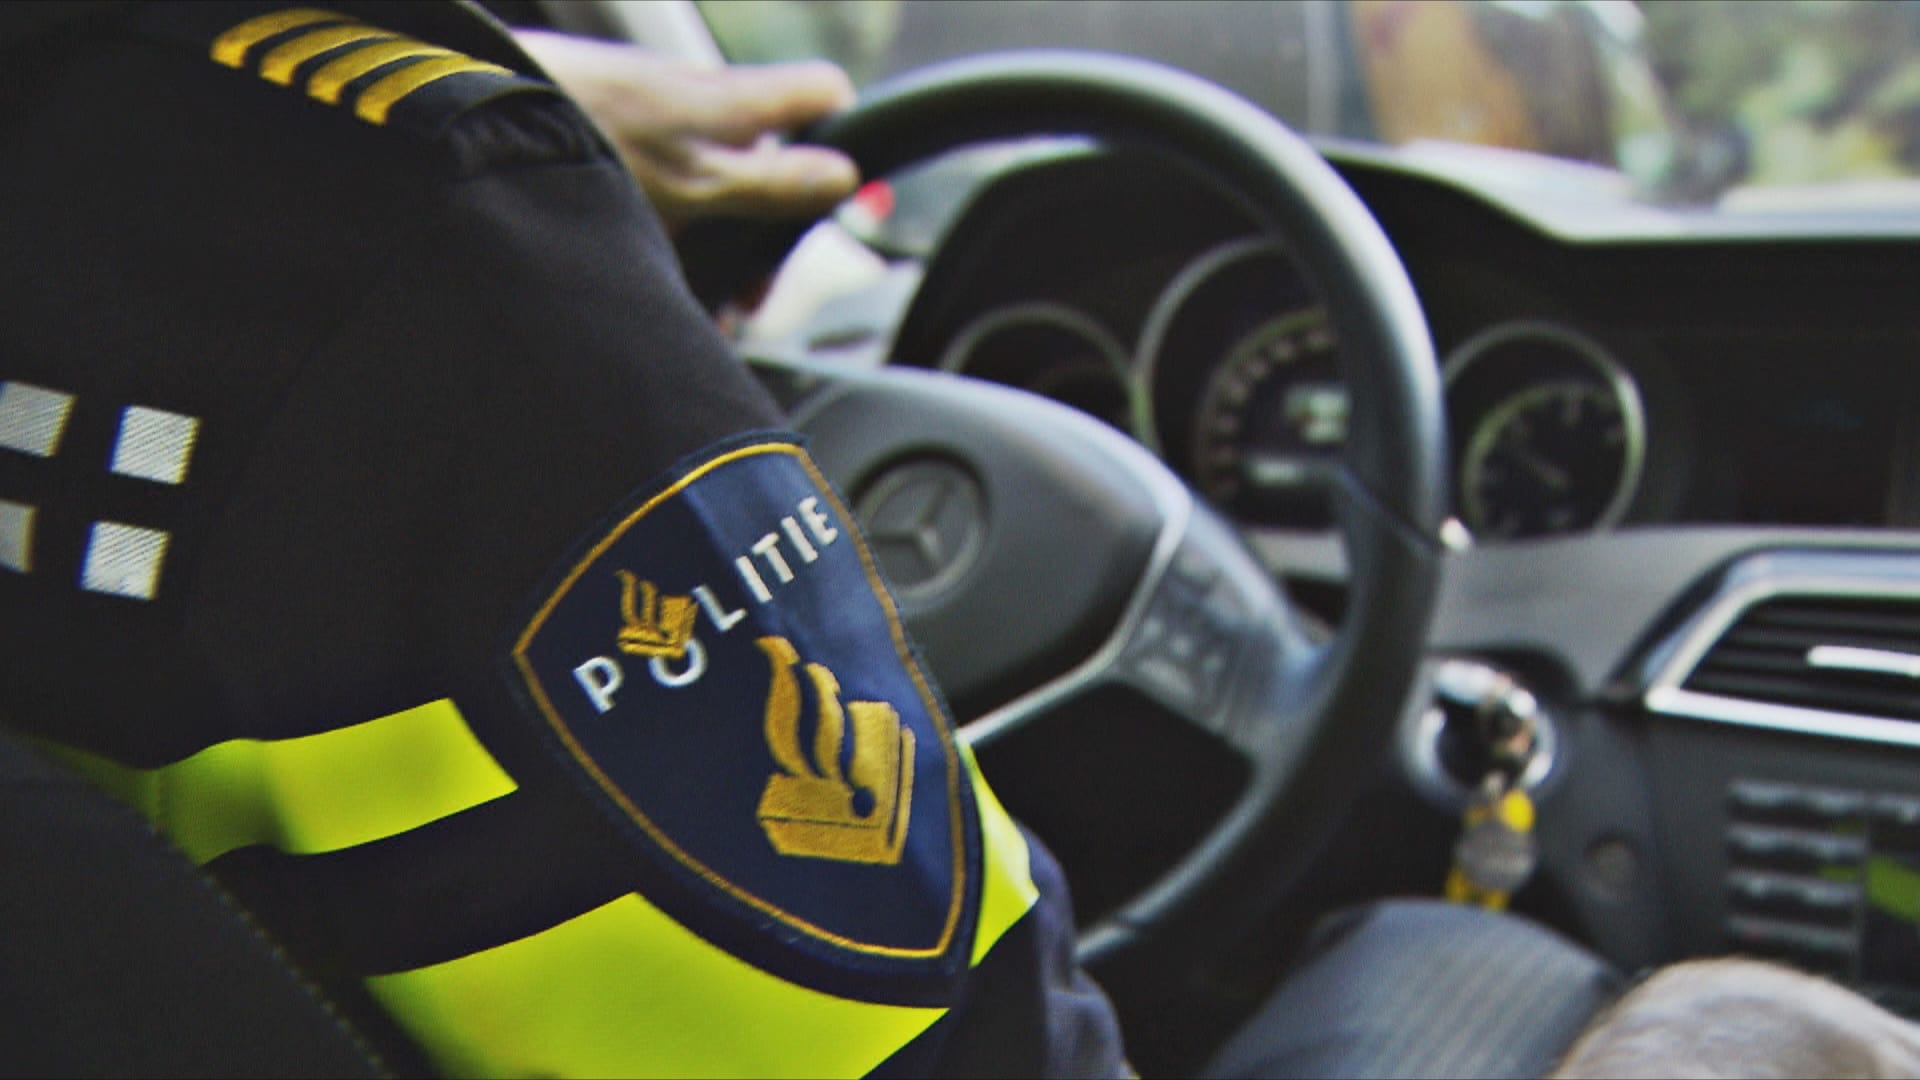 Politie maakt einde aan illegaal feest in Heerde bij viaduct